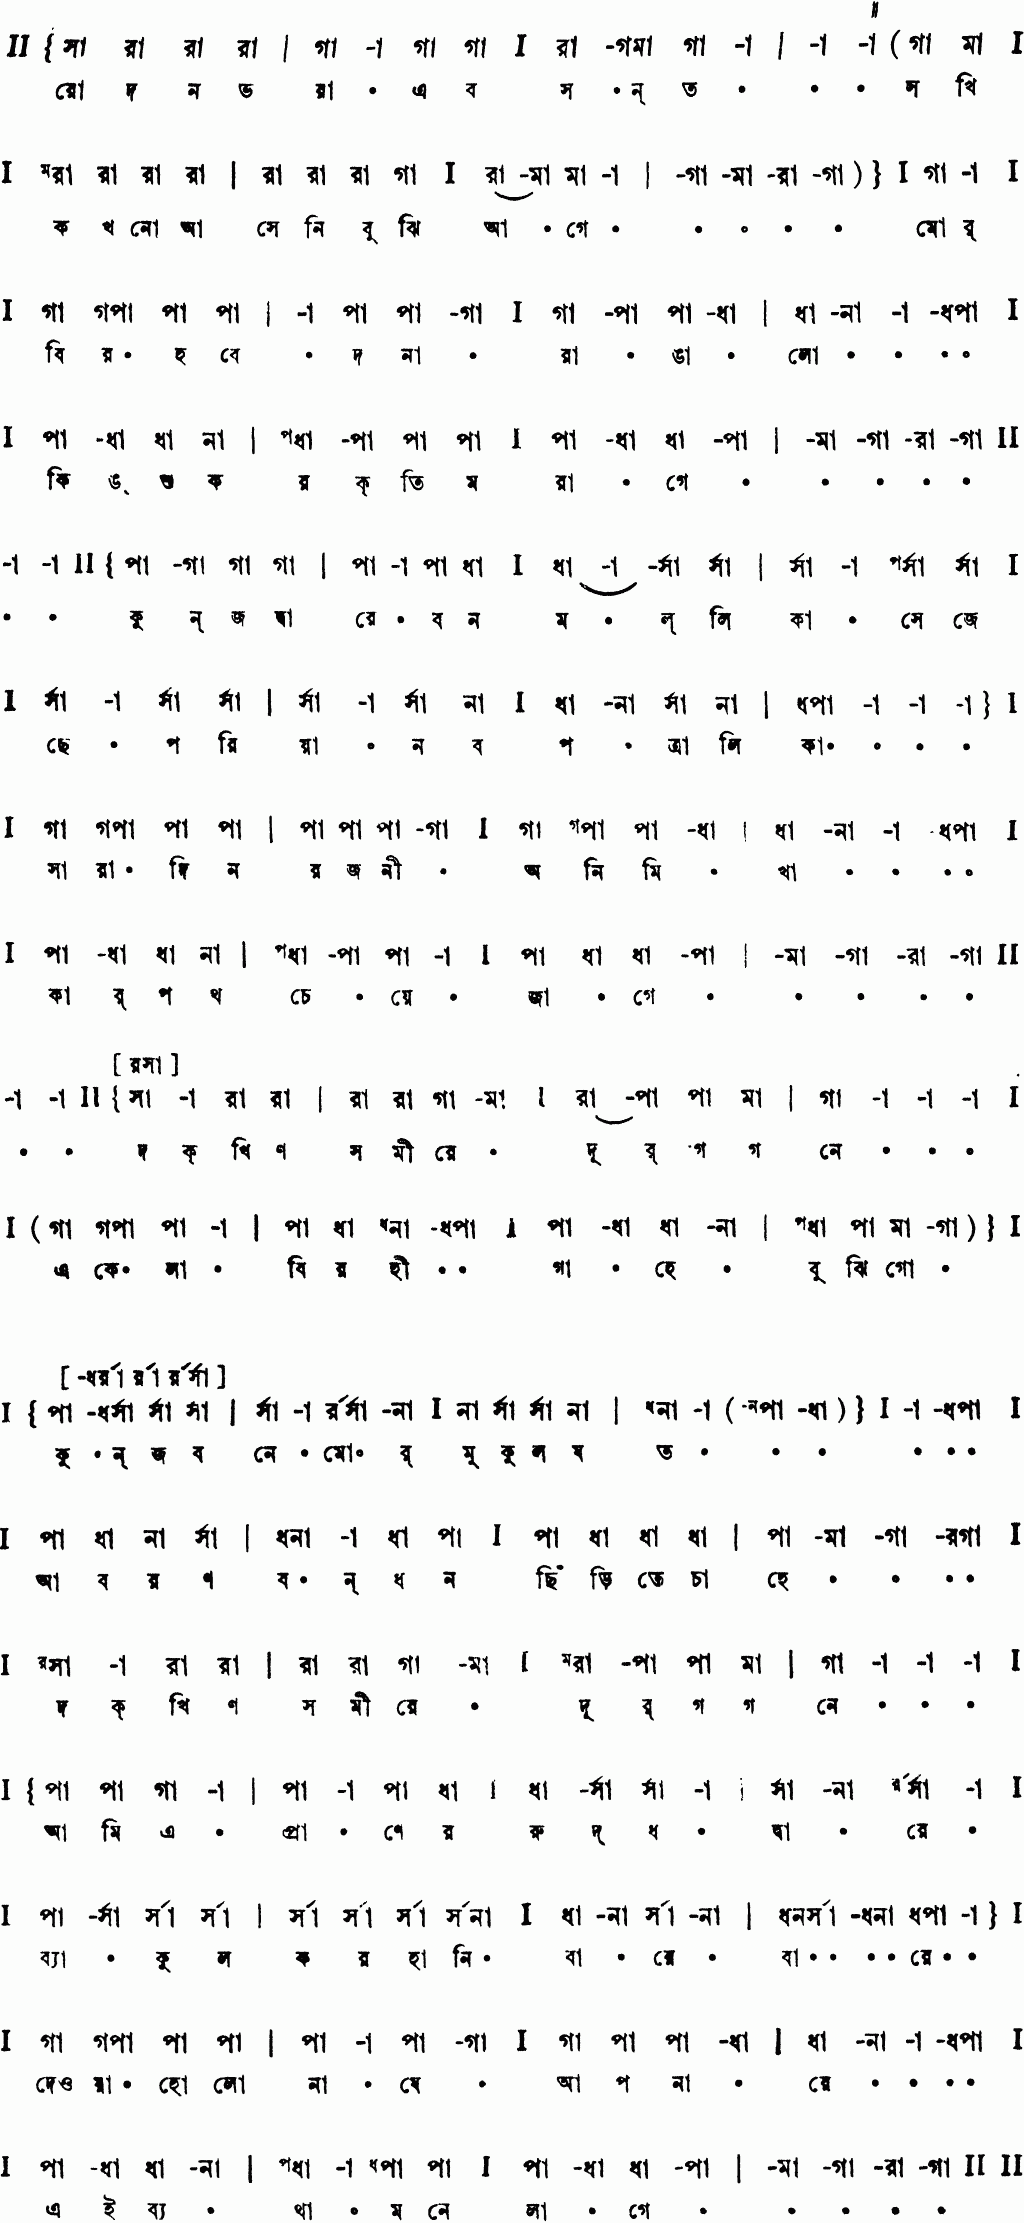 Notation rodanbhora e basanta